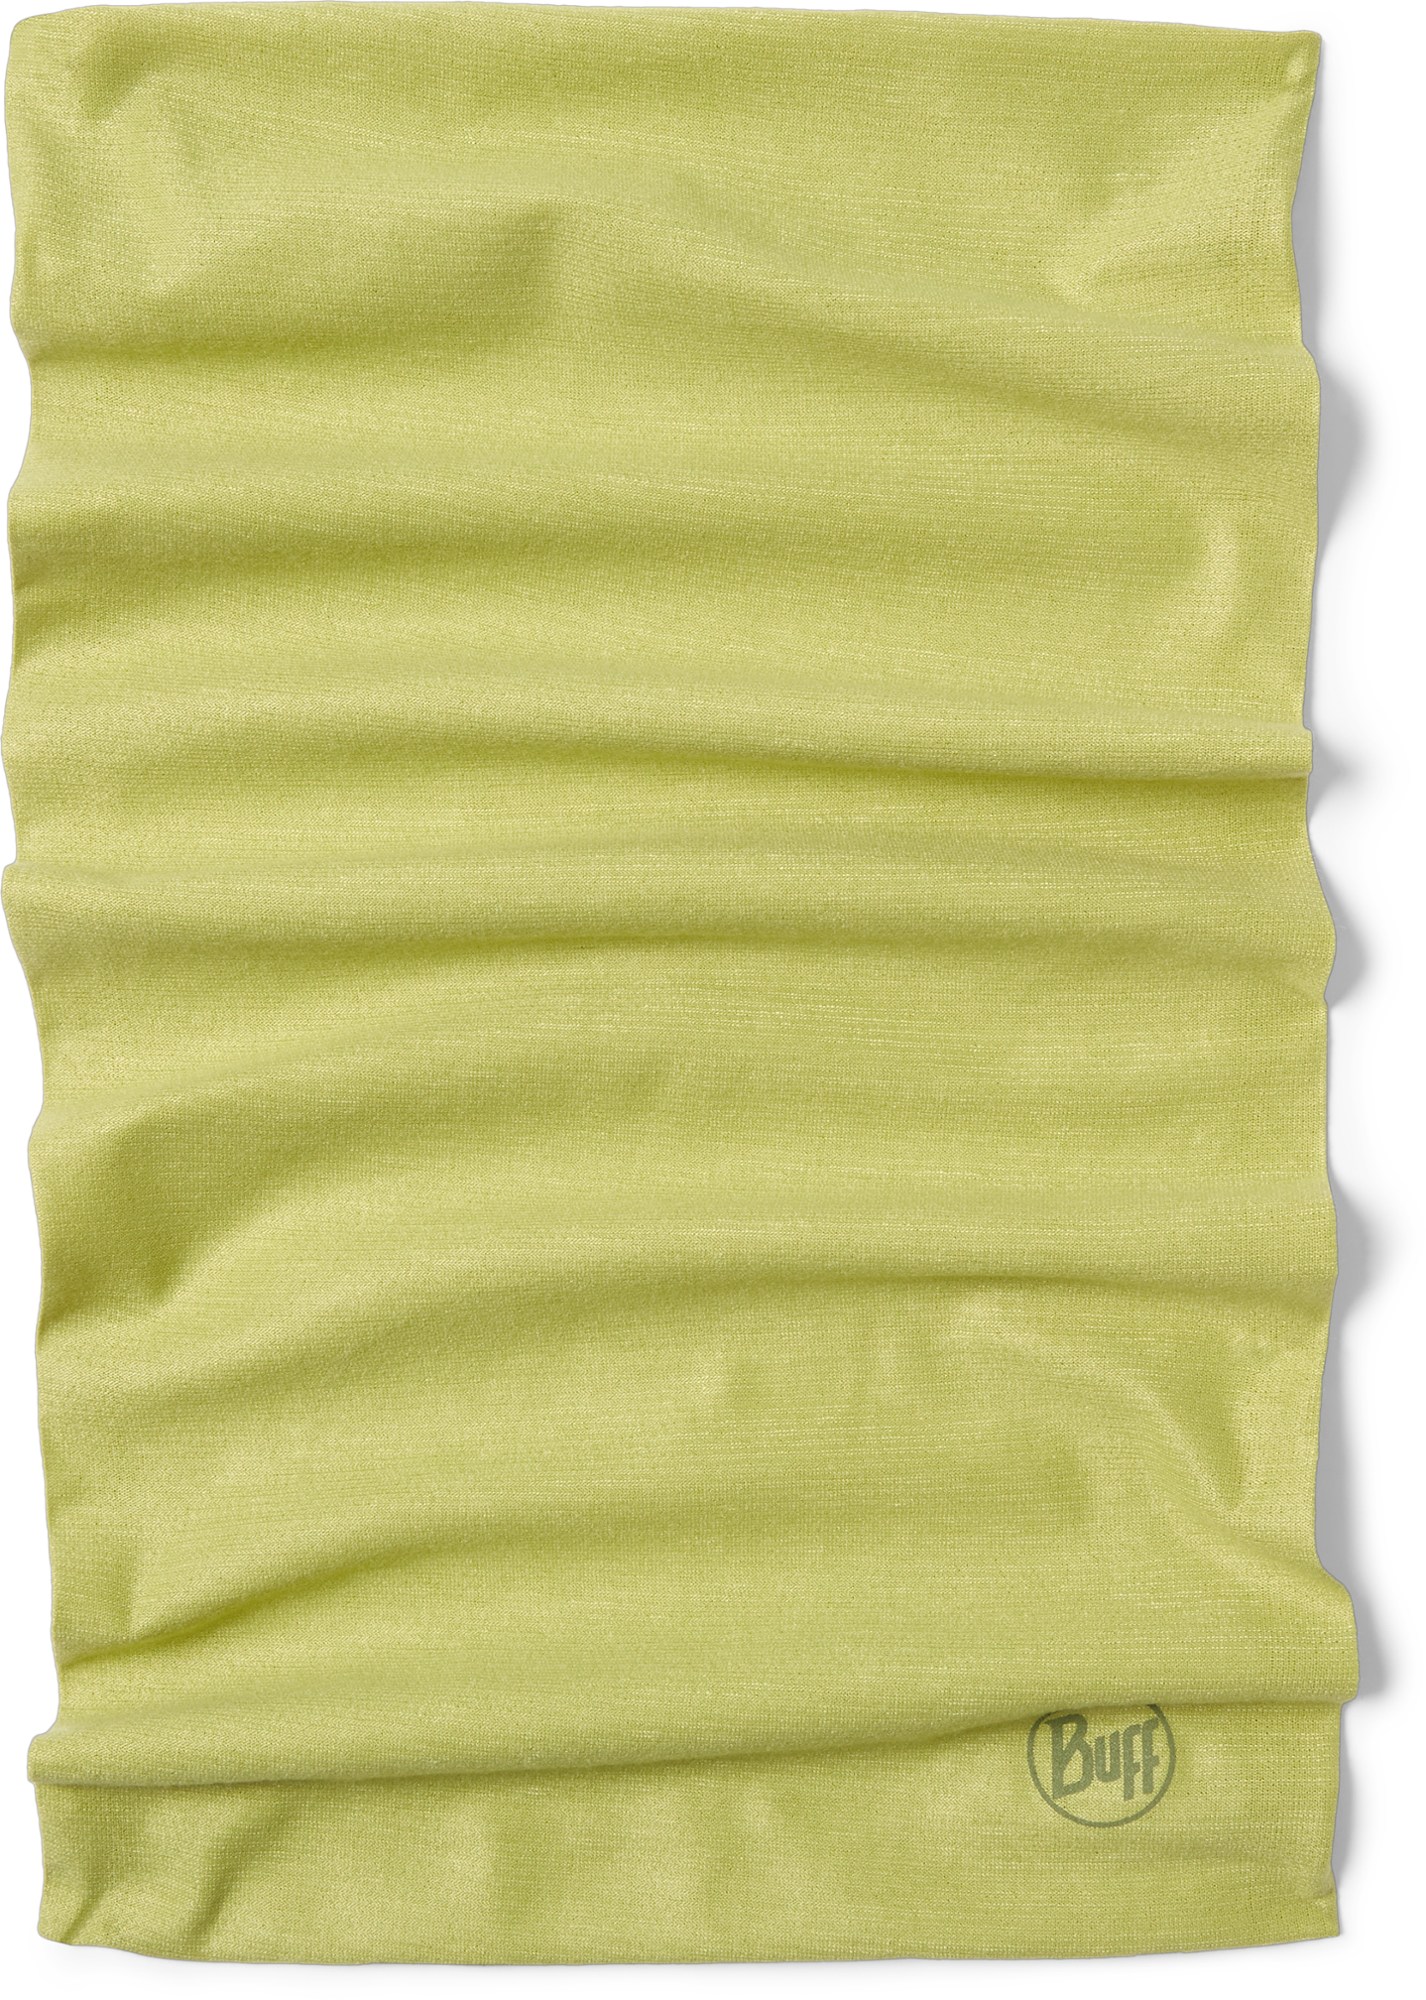 Многофункциональный галстук CoolNet UV+ с защитой от насекомых Buff, зеленый buff бандана buff coolnet uv one size frane light grey унисекс